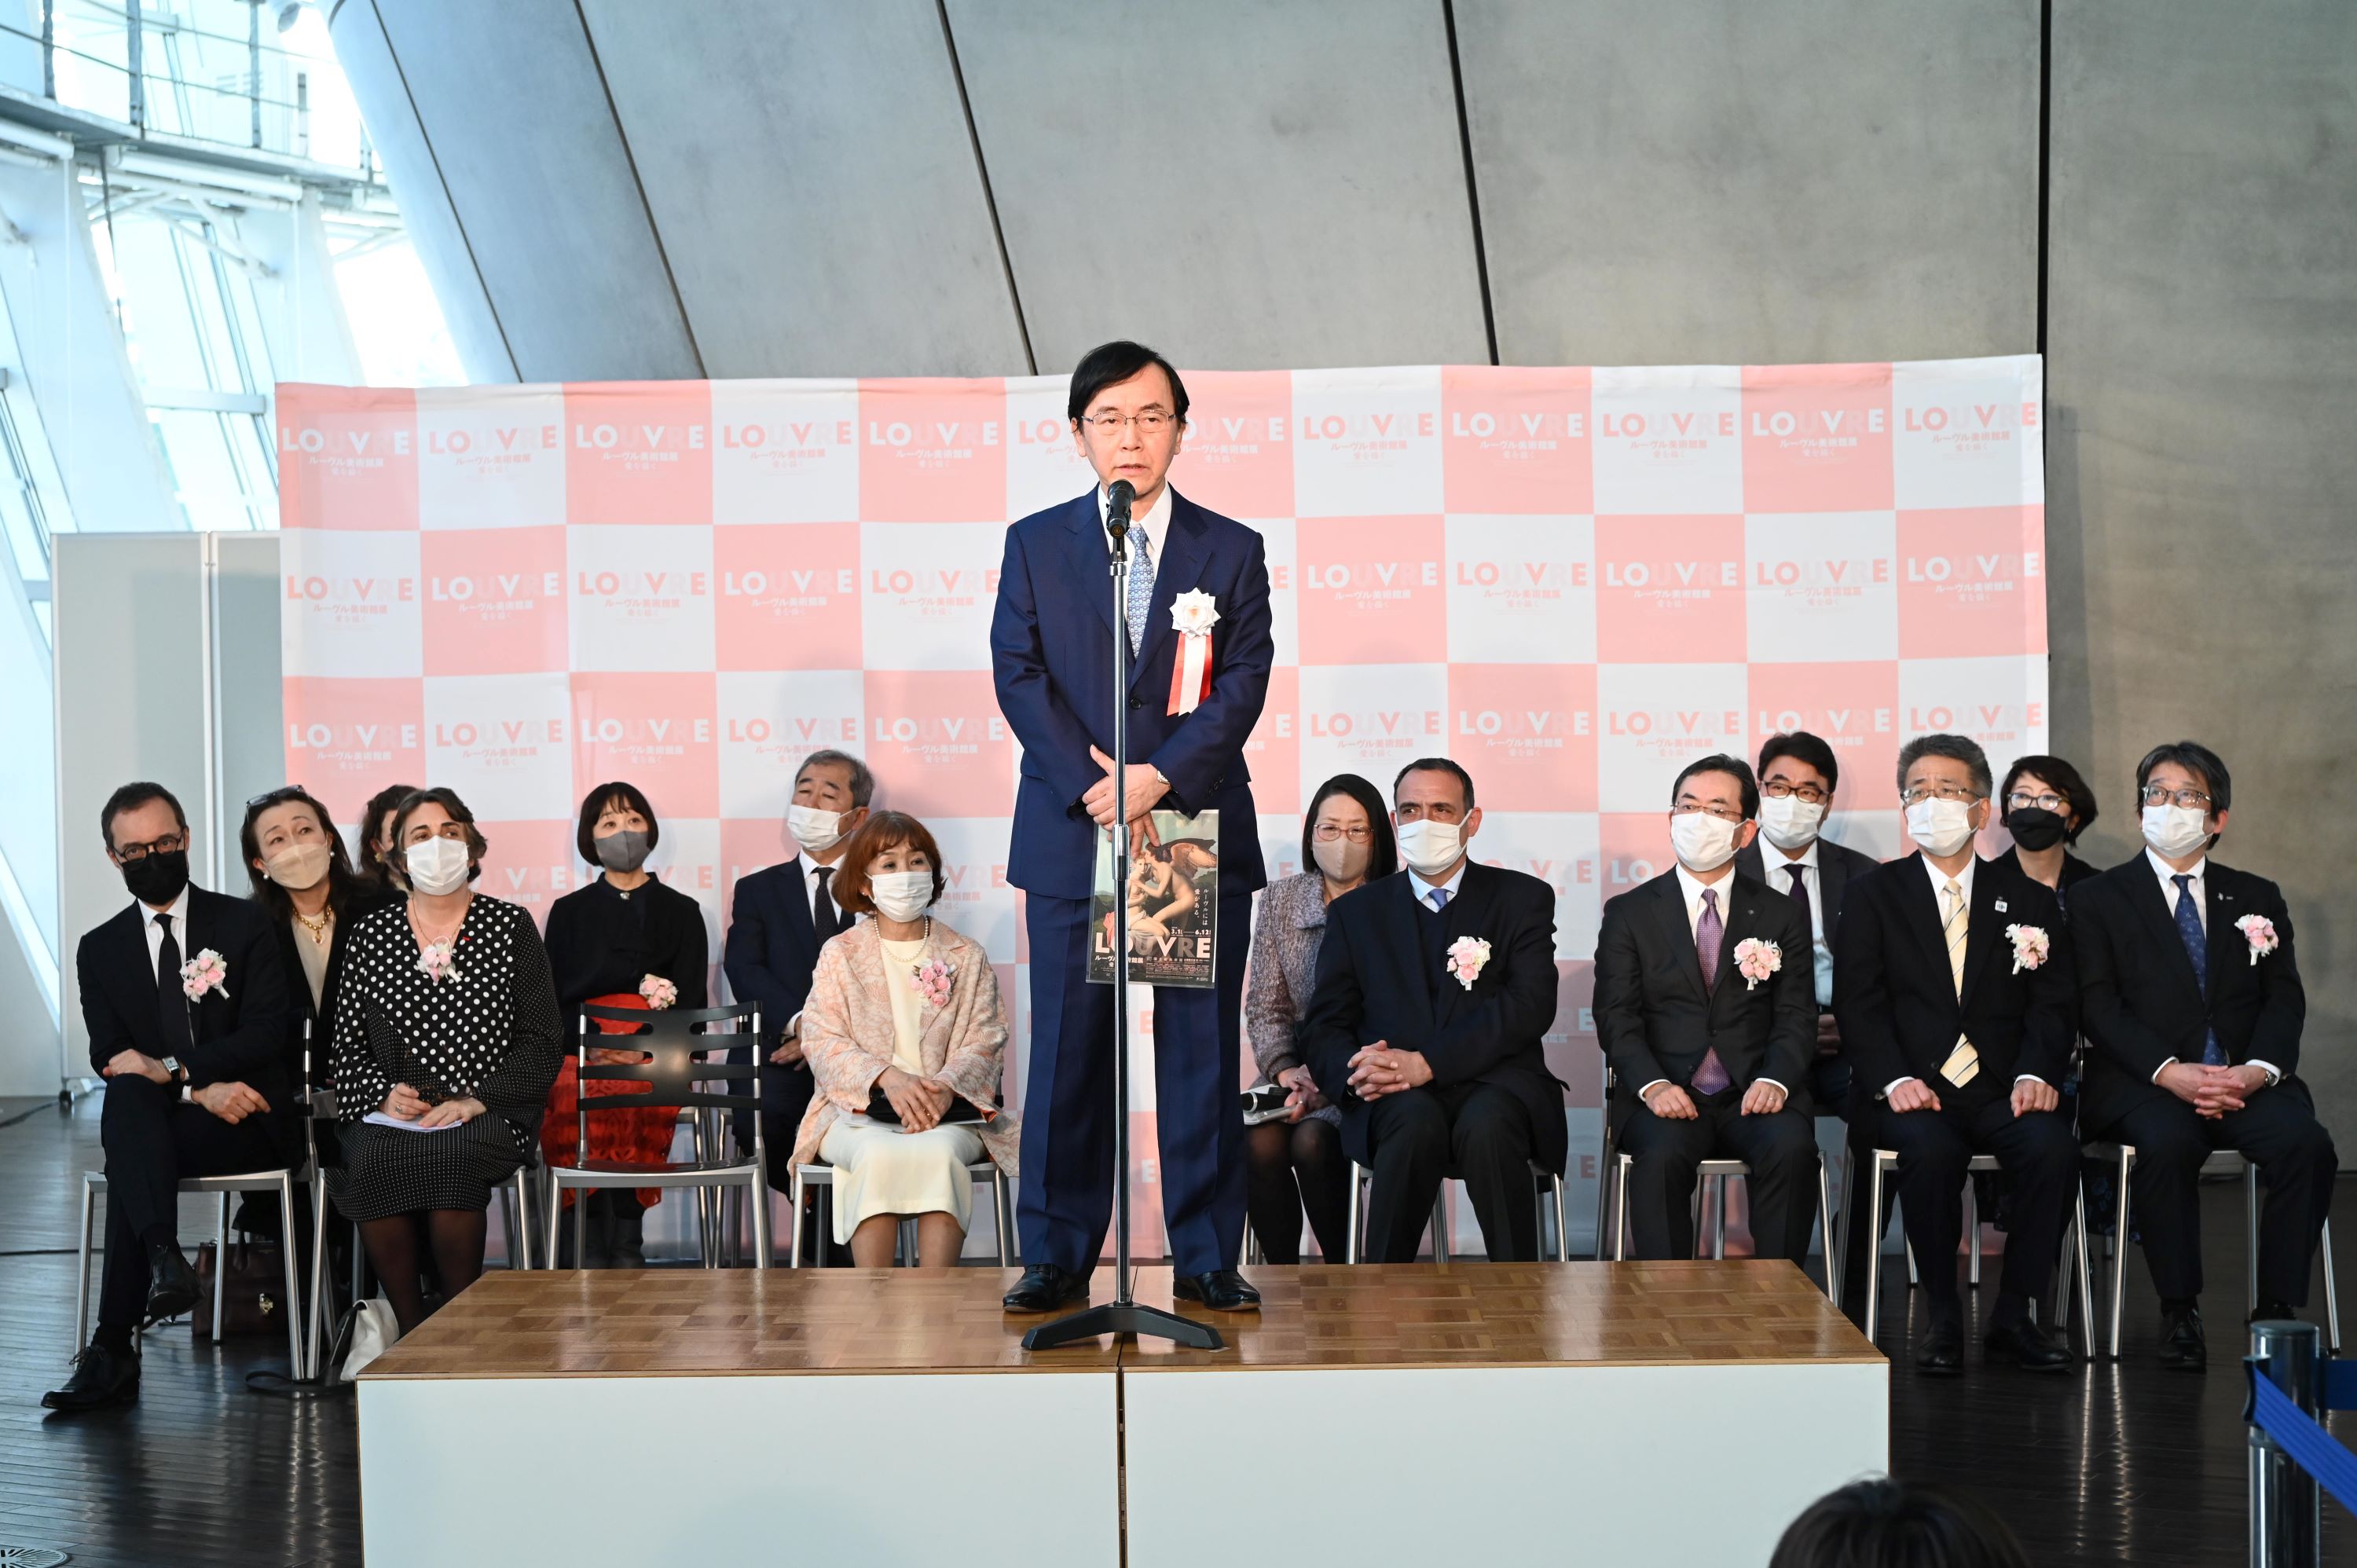 「ルーヴル美術館展 愛を描く」開会式で主催者挨拶をする日本テレビ放送網の杉山美邦・会長 ⓒNTV